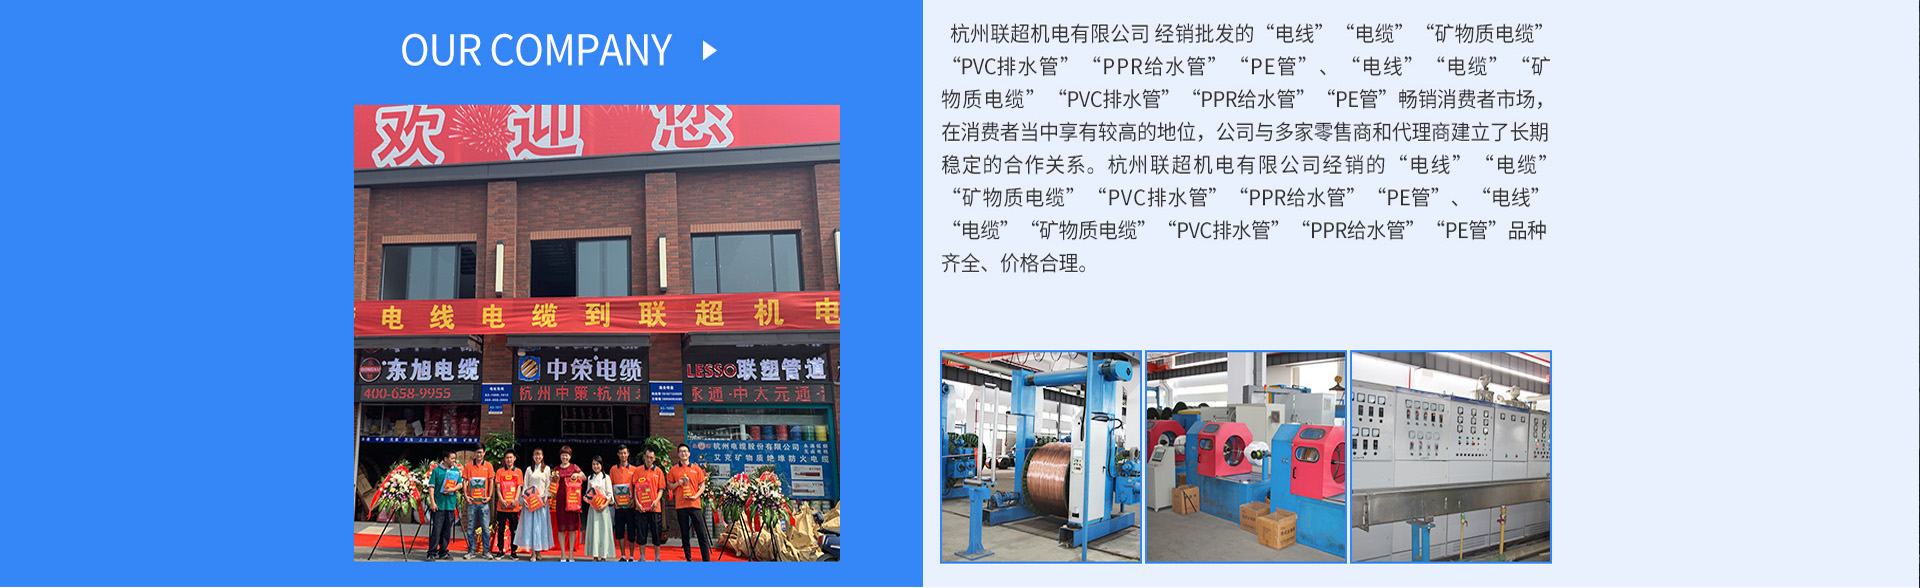 杭州联超机电有限公司 杭州联超电缆有限公司